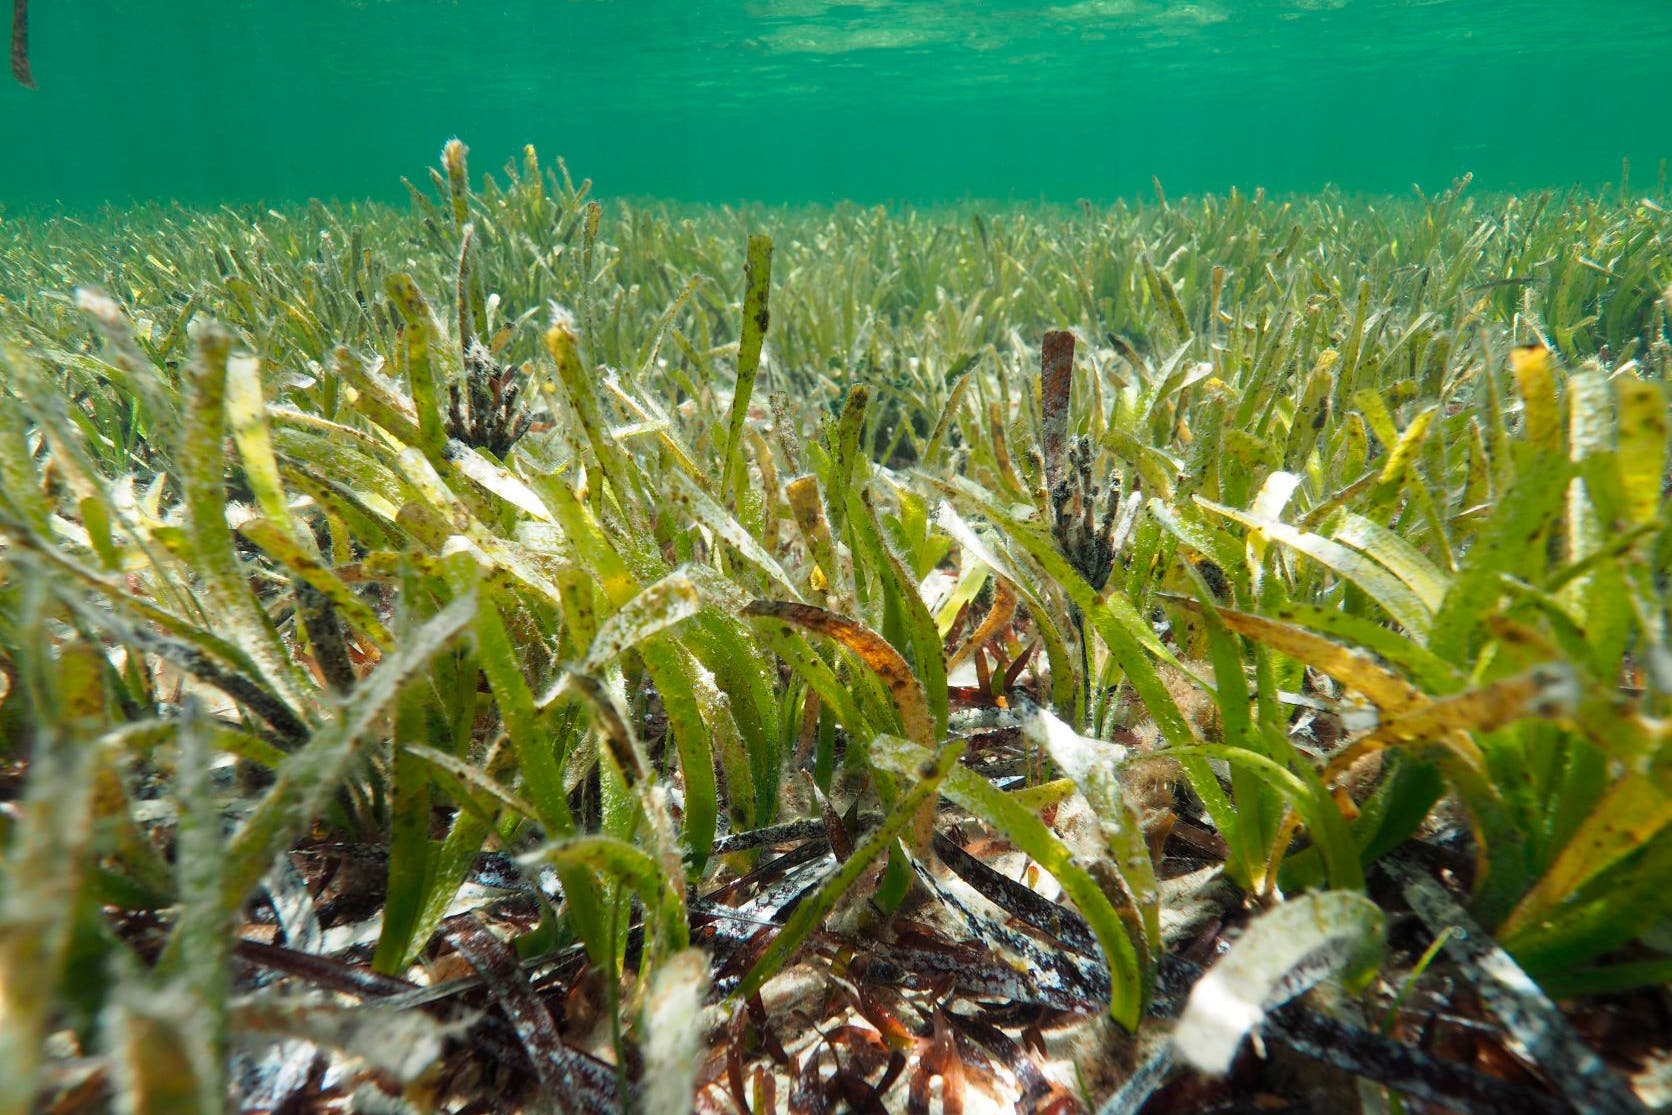 جزء من حقول عشب البحر الممتد قبالة سواحل أستراليا والتي تم الكشف مؤخراً أنها كائن نباتي واحد